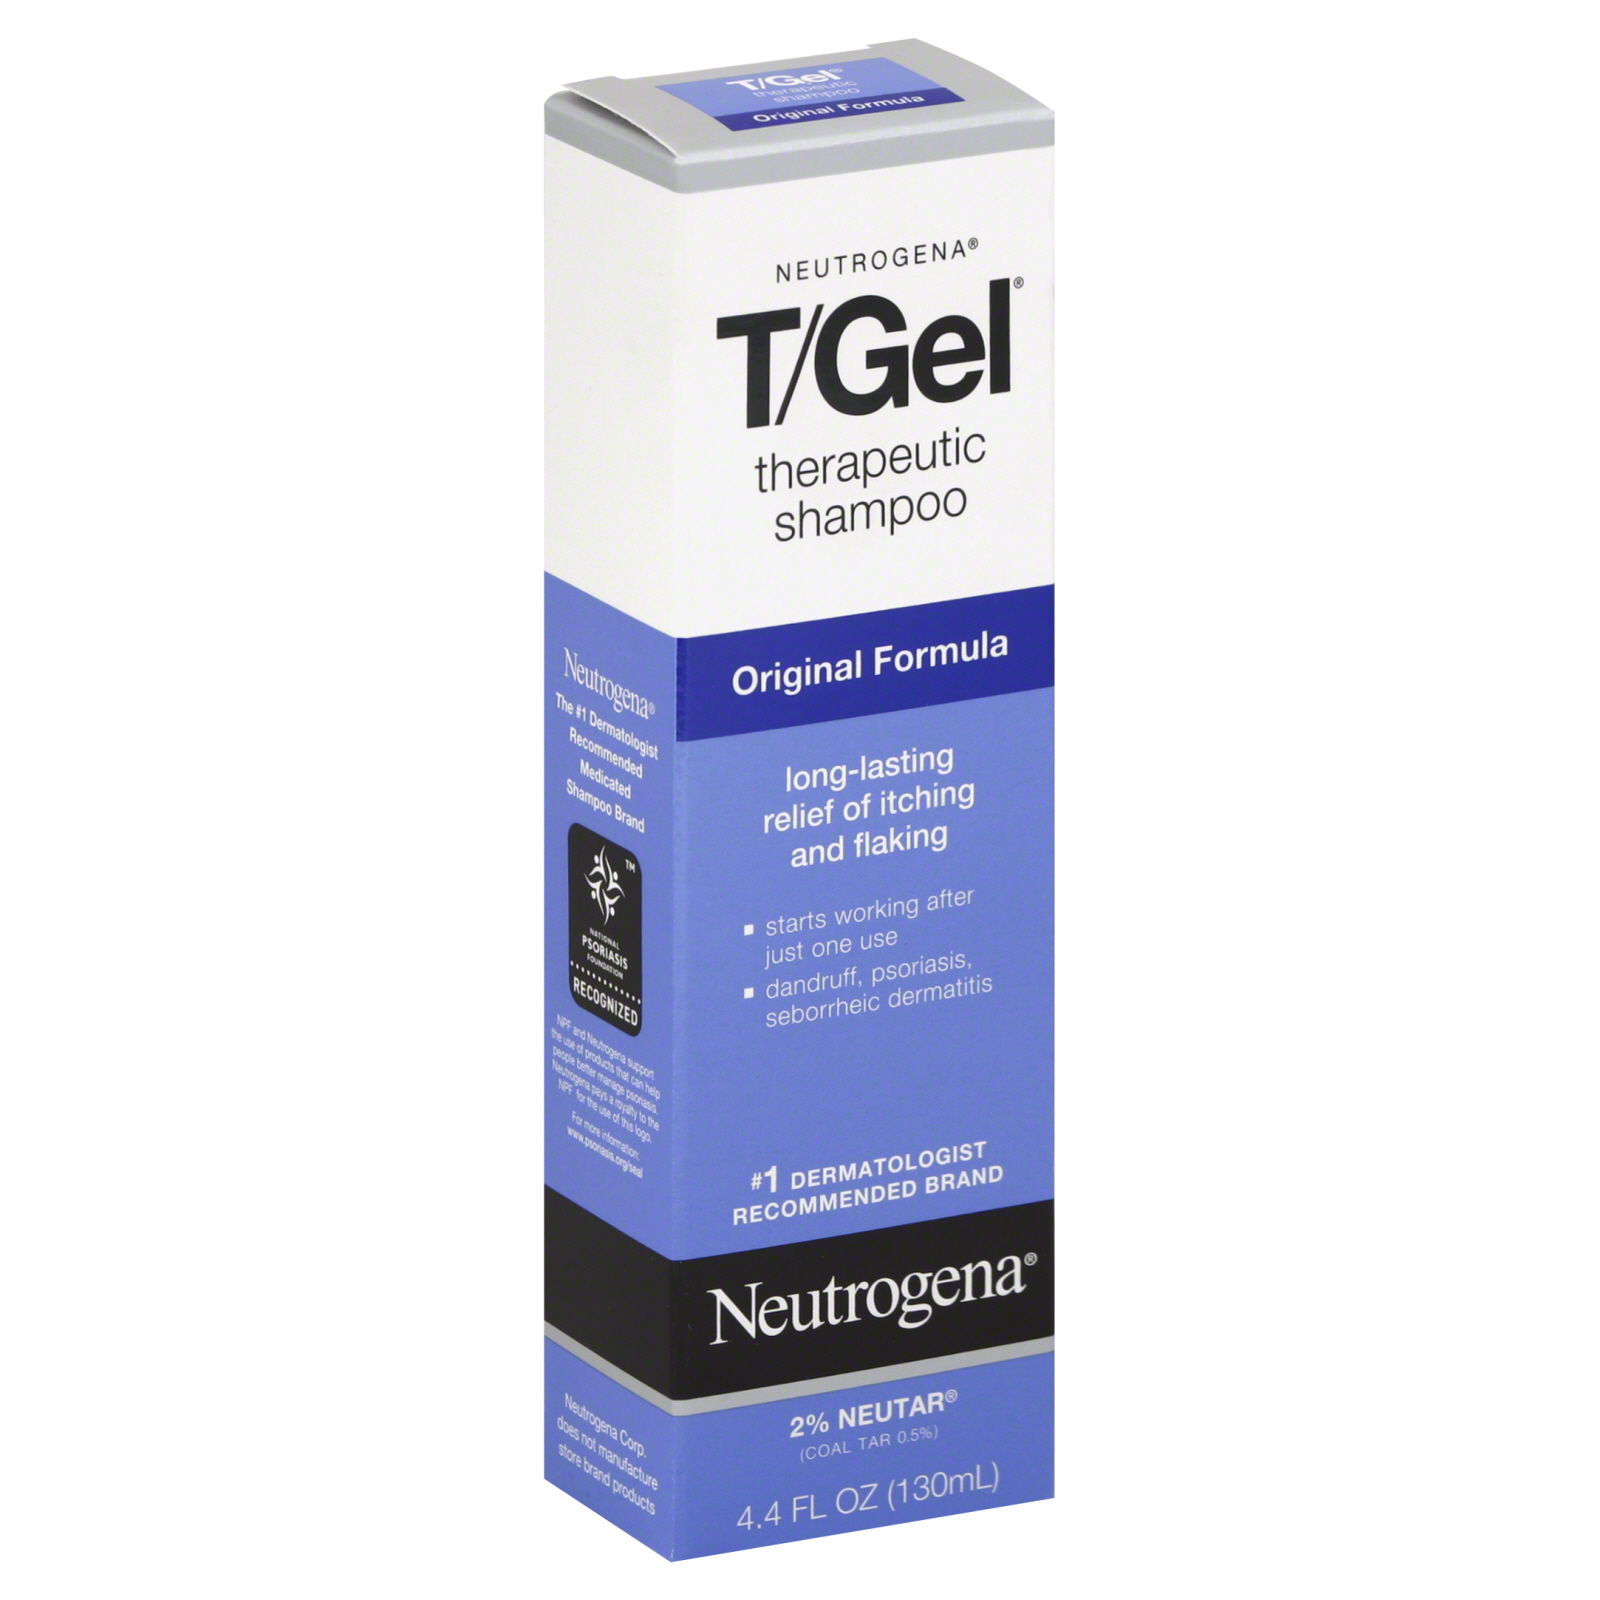 Neutrogena T/Gel Therapeutic Shampoo, Original Formula, 4.4 fl oz (130 ml)